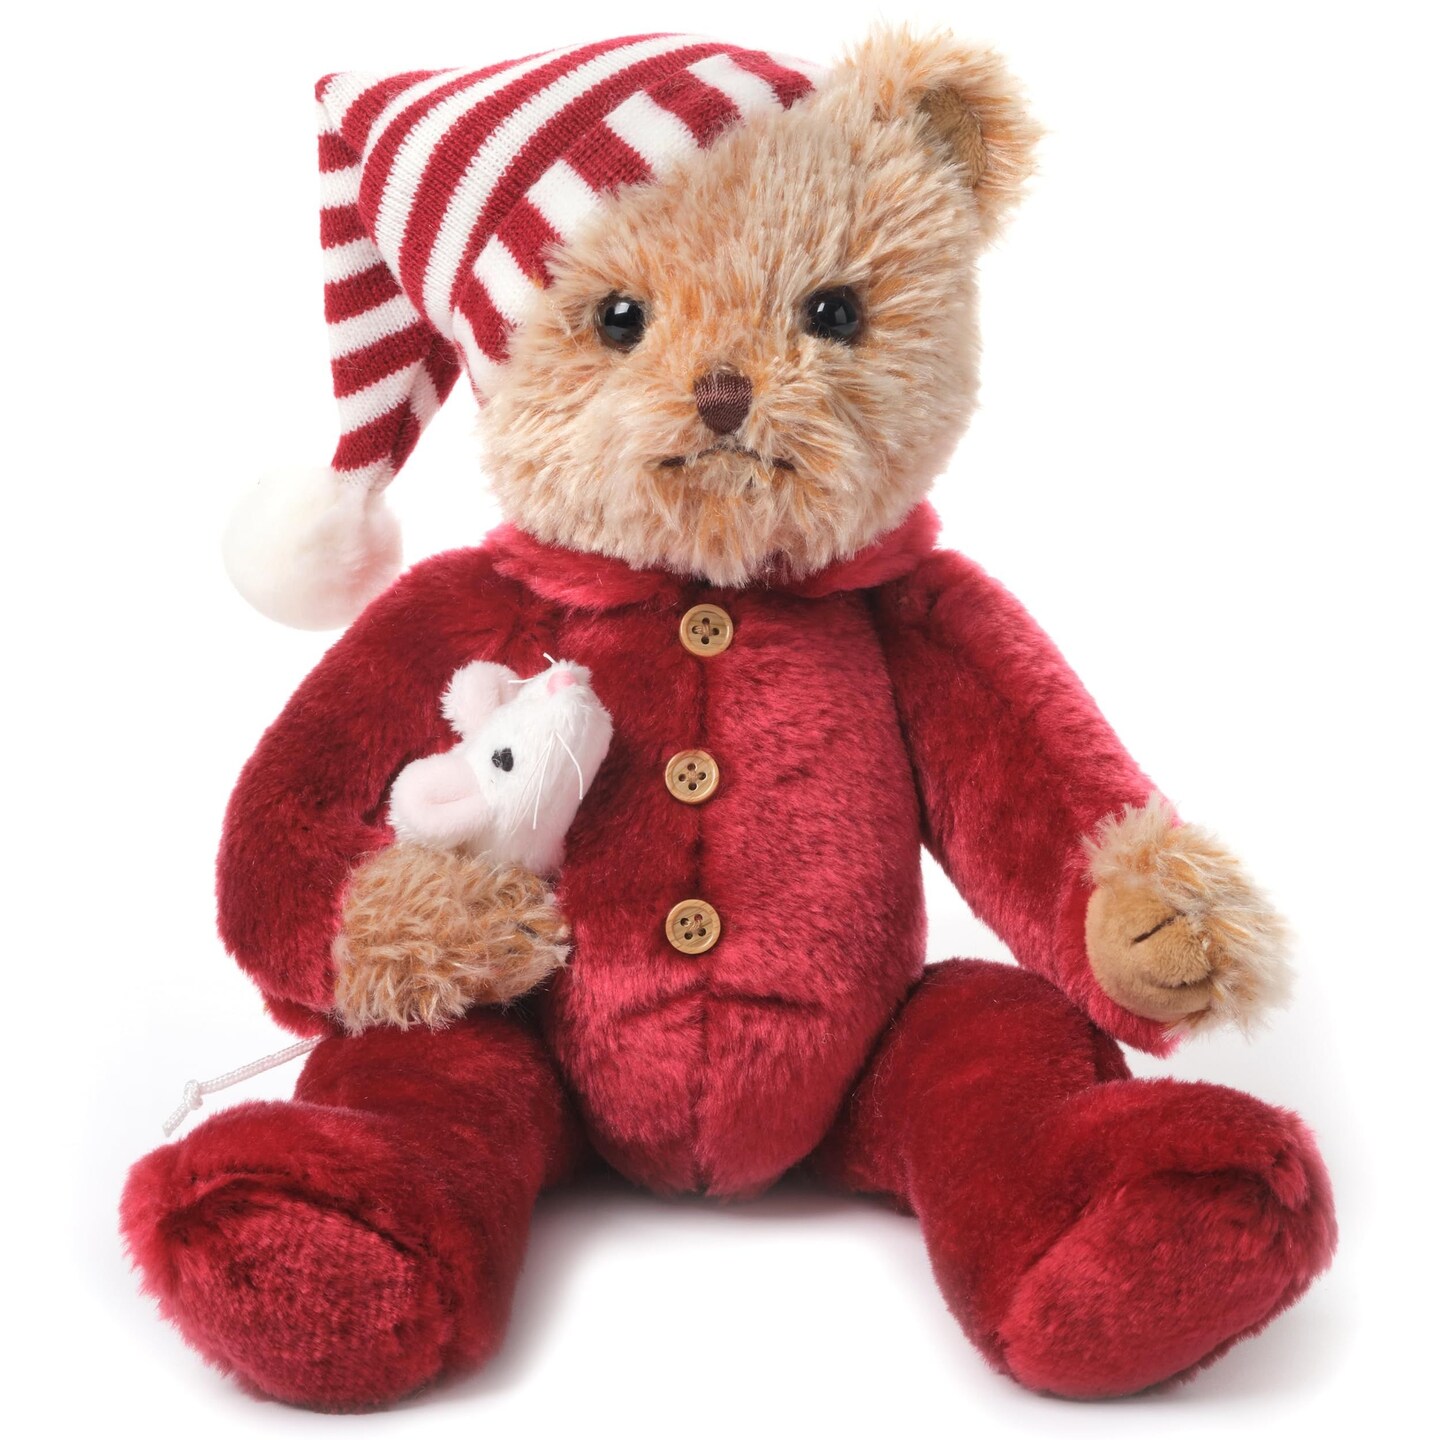 Bearington Sleepy and Squeek Christmas Plush Toys, 14 Inch Holiday Teddy Bears